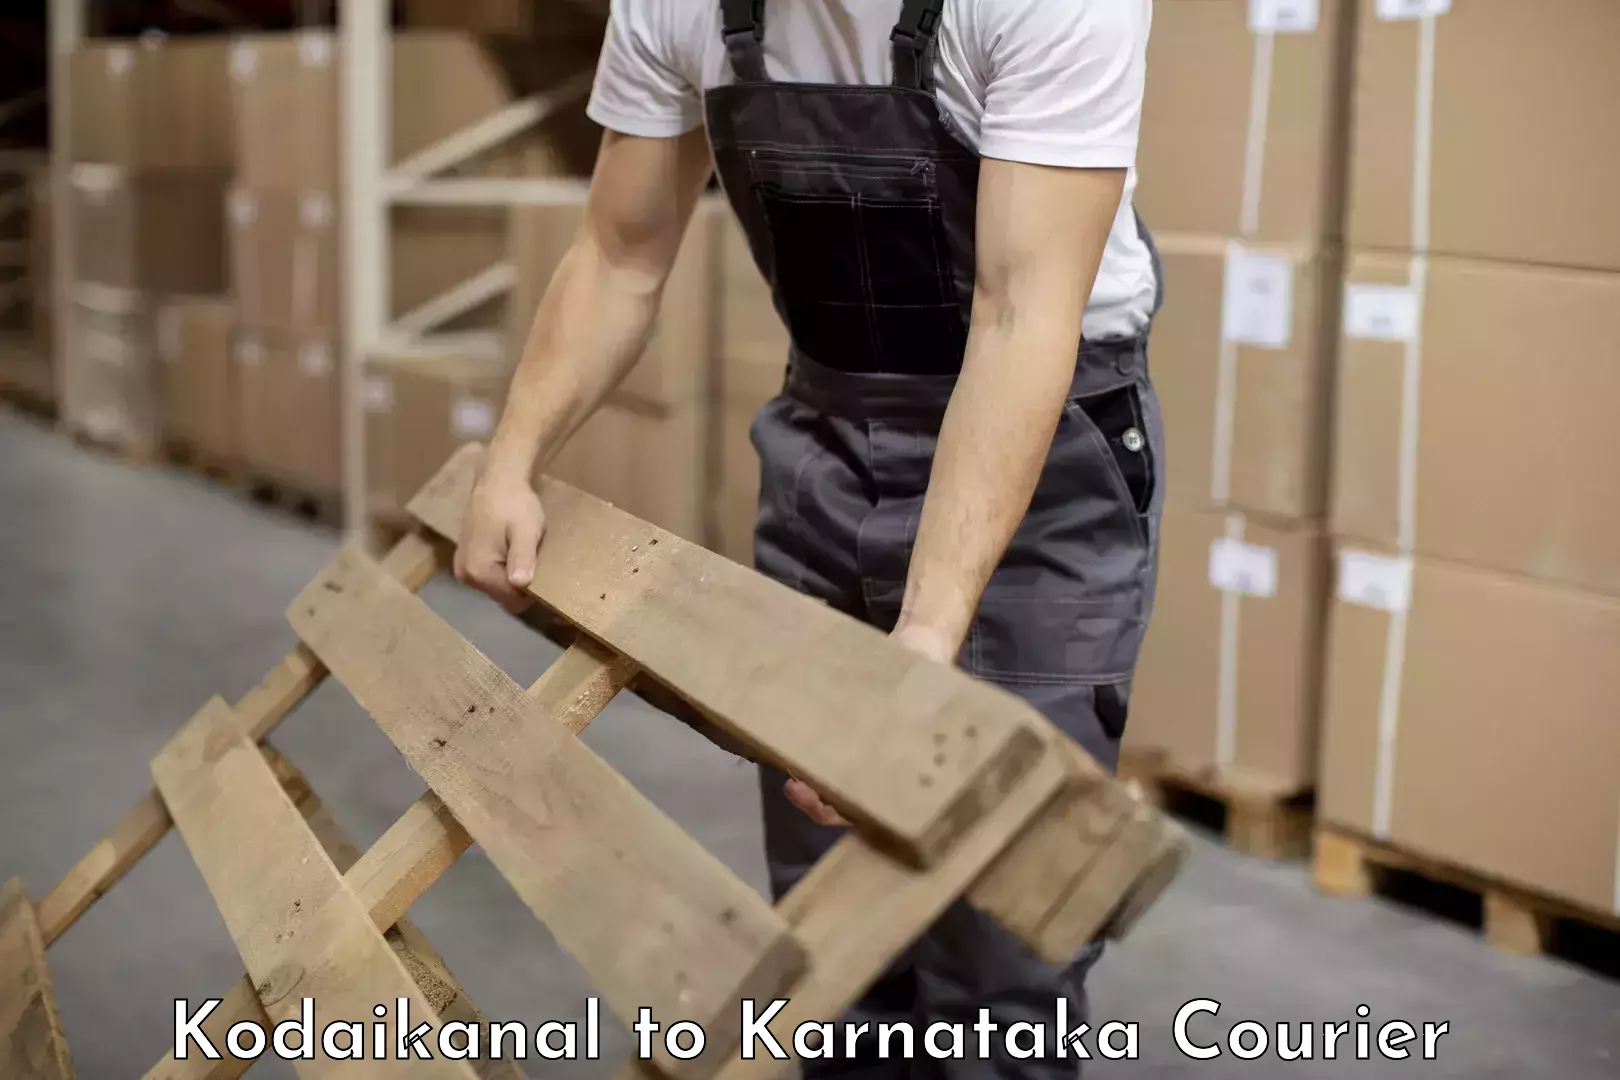 Trusted furniture movers Kodaikanal to Hagaribommanahalli